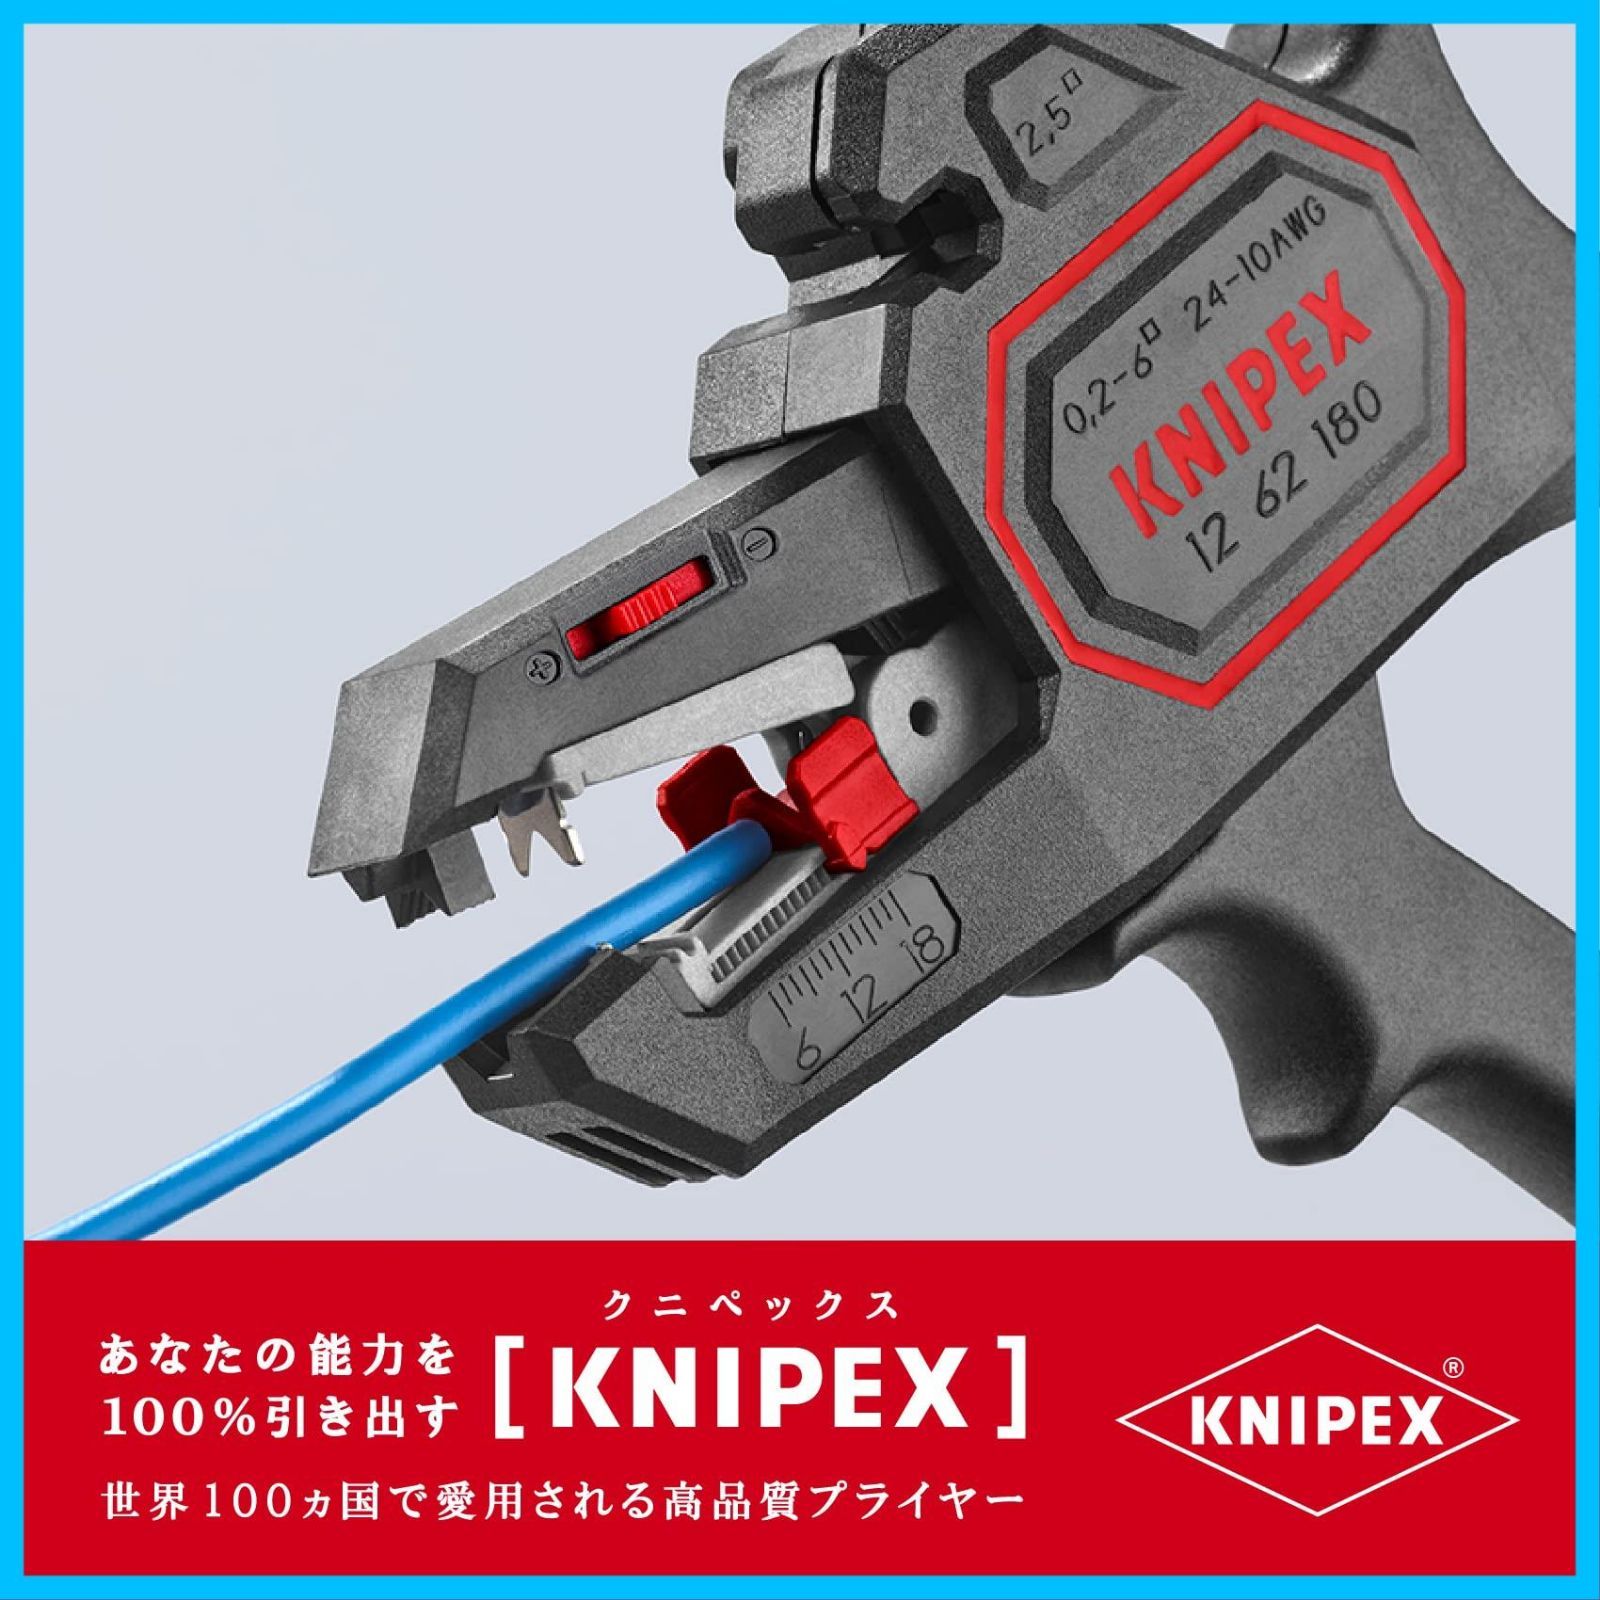 KNIPEX 自動ワイヤーストリッパー 1262-180 - 絵本・児童書